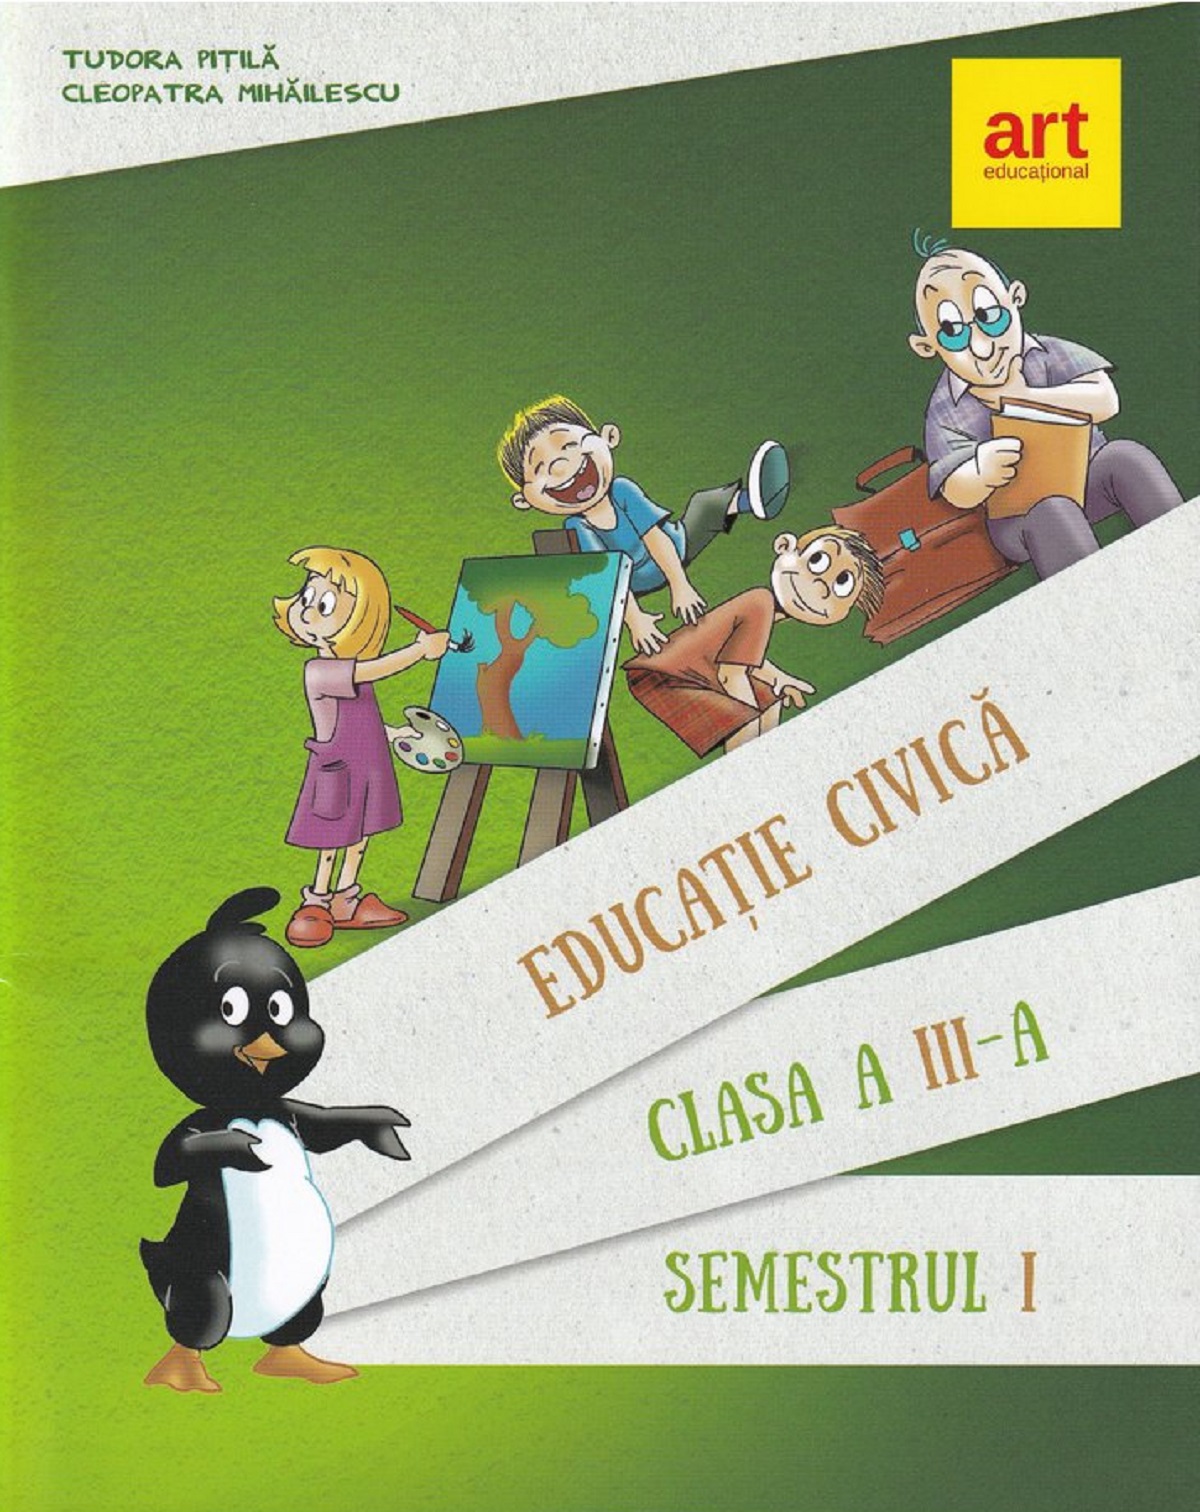 Educatie civica - Clasa 3 Sem.1 - Manual - Tudora Pitila, Cleopatra Mihailescu